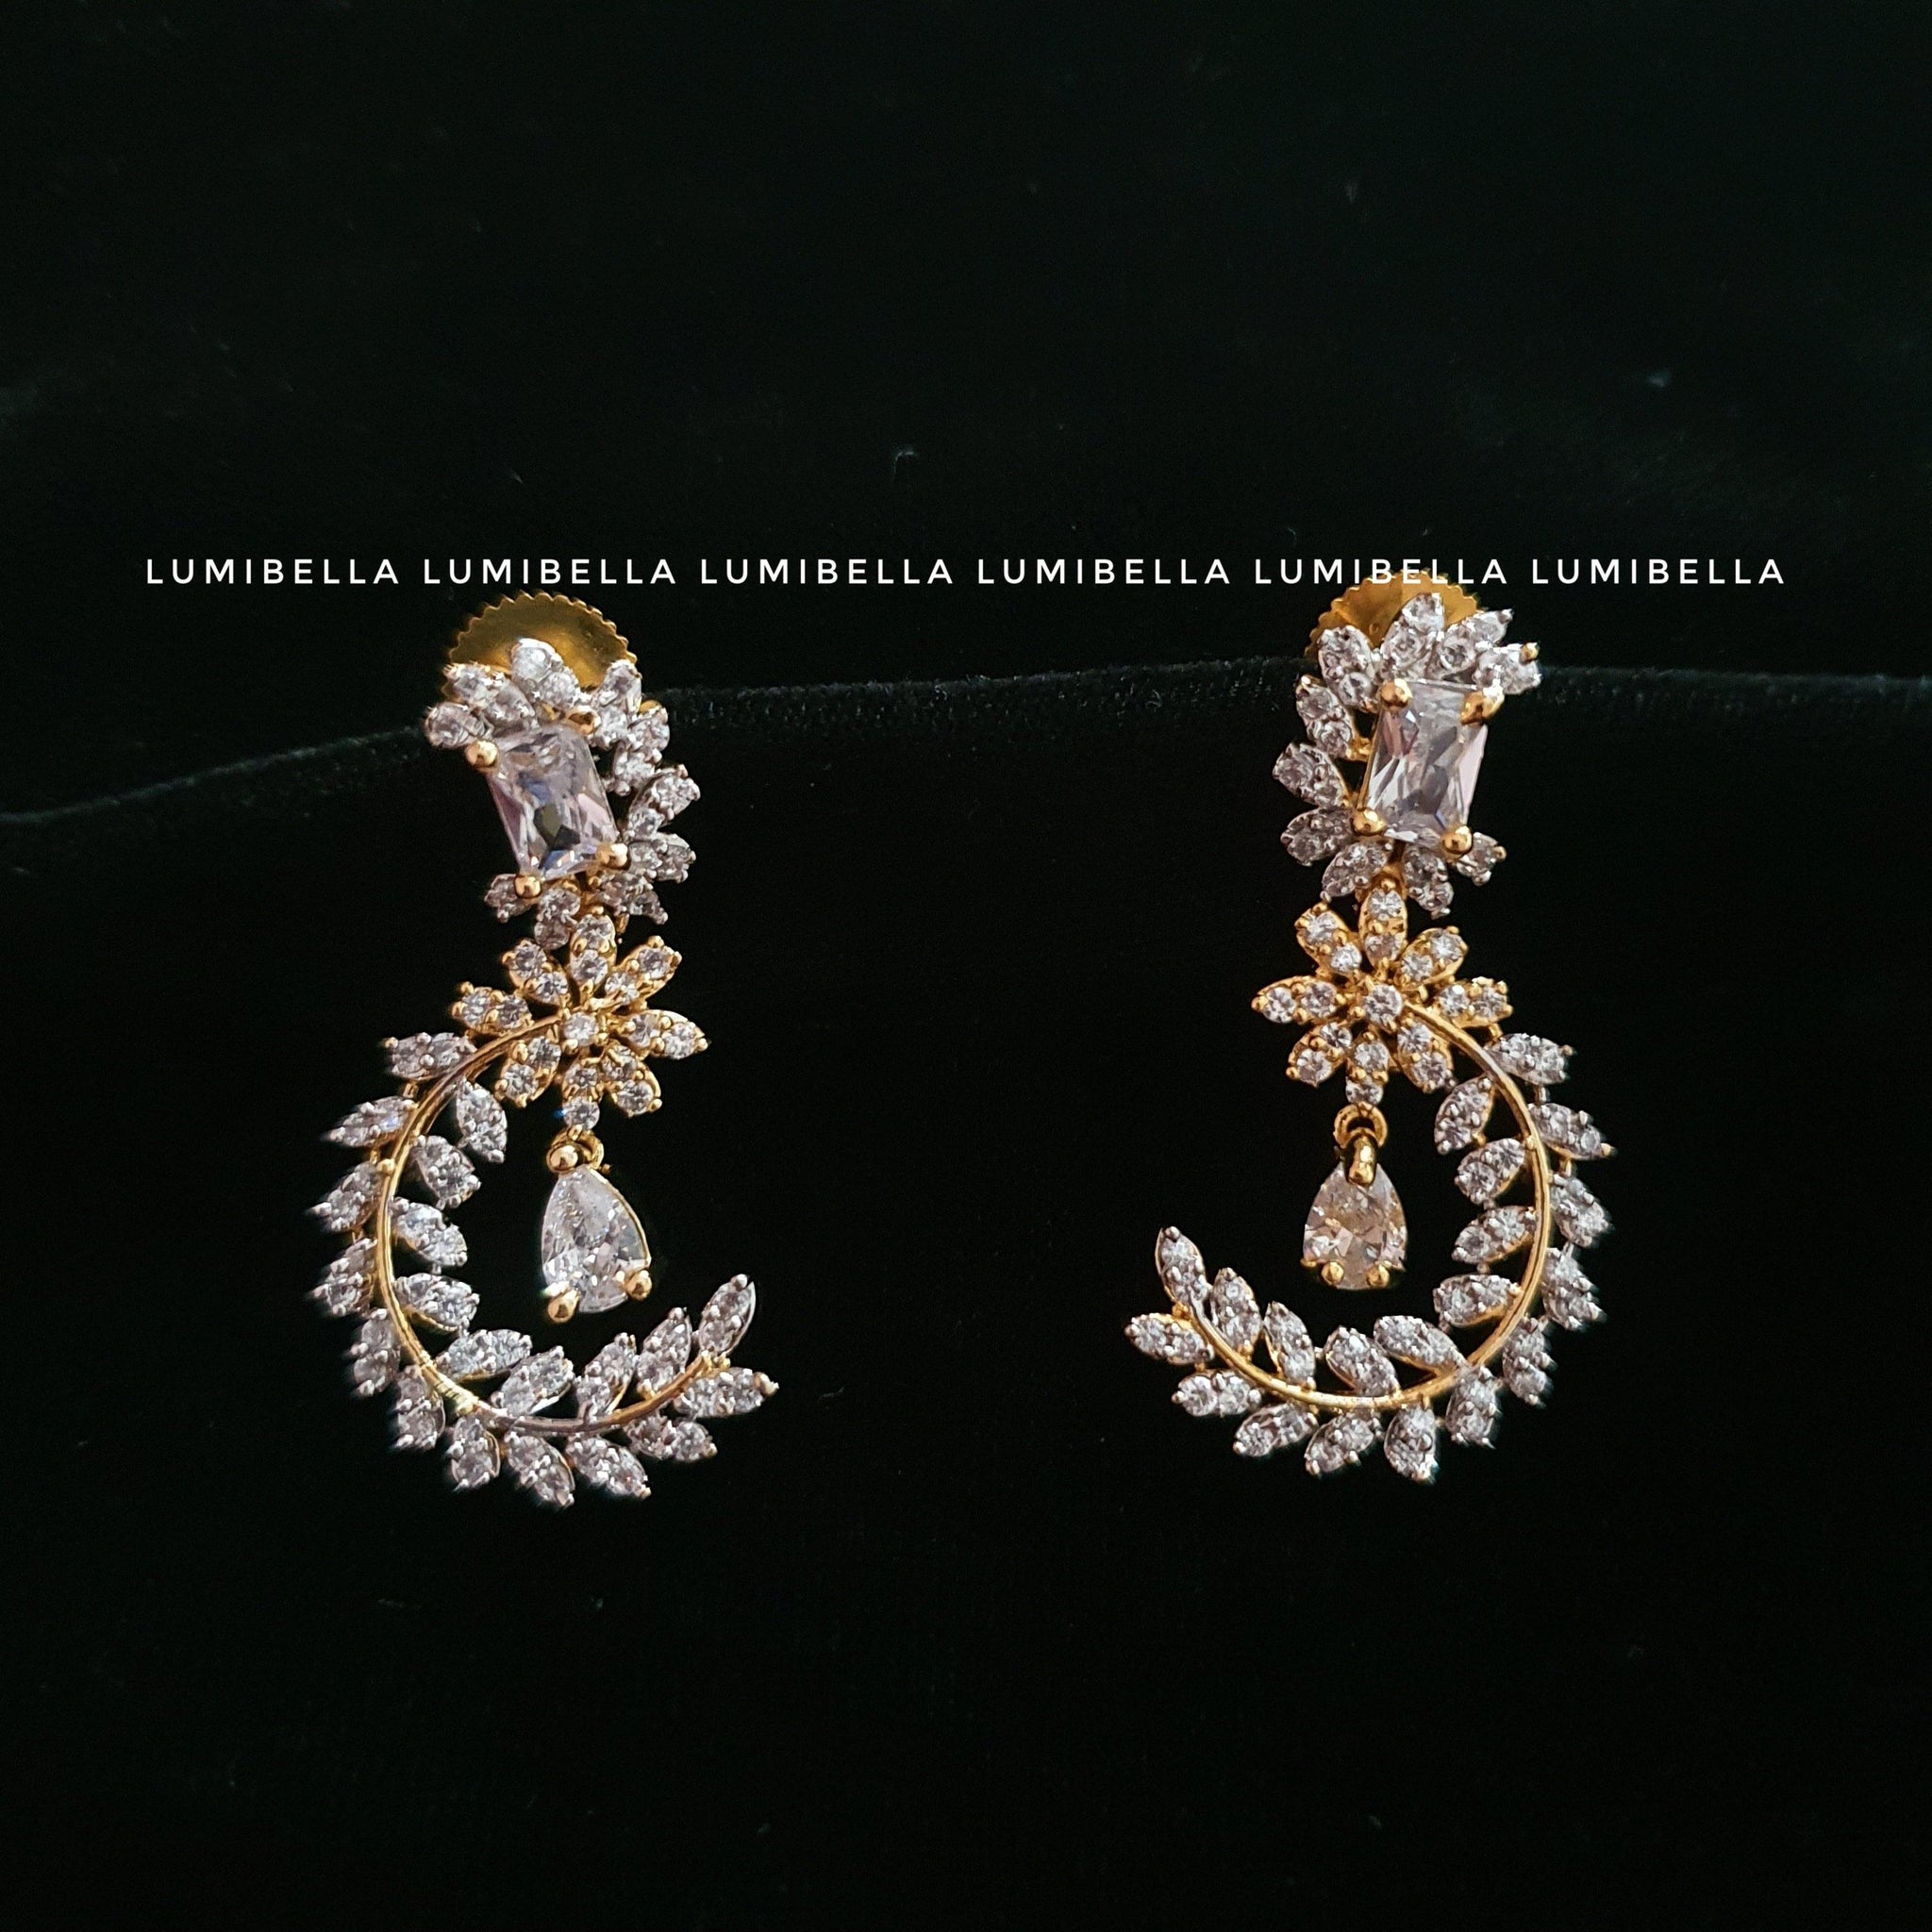 Floral Style Dangle Earrings - LumibellaFashion